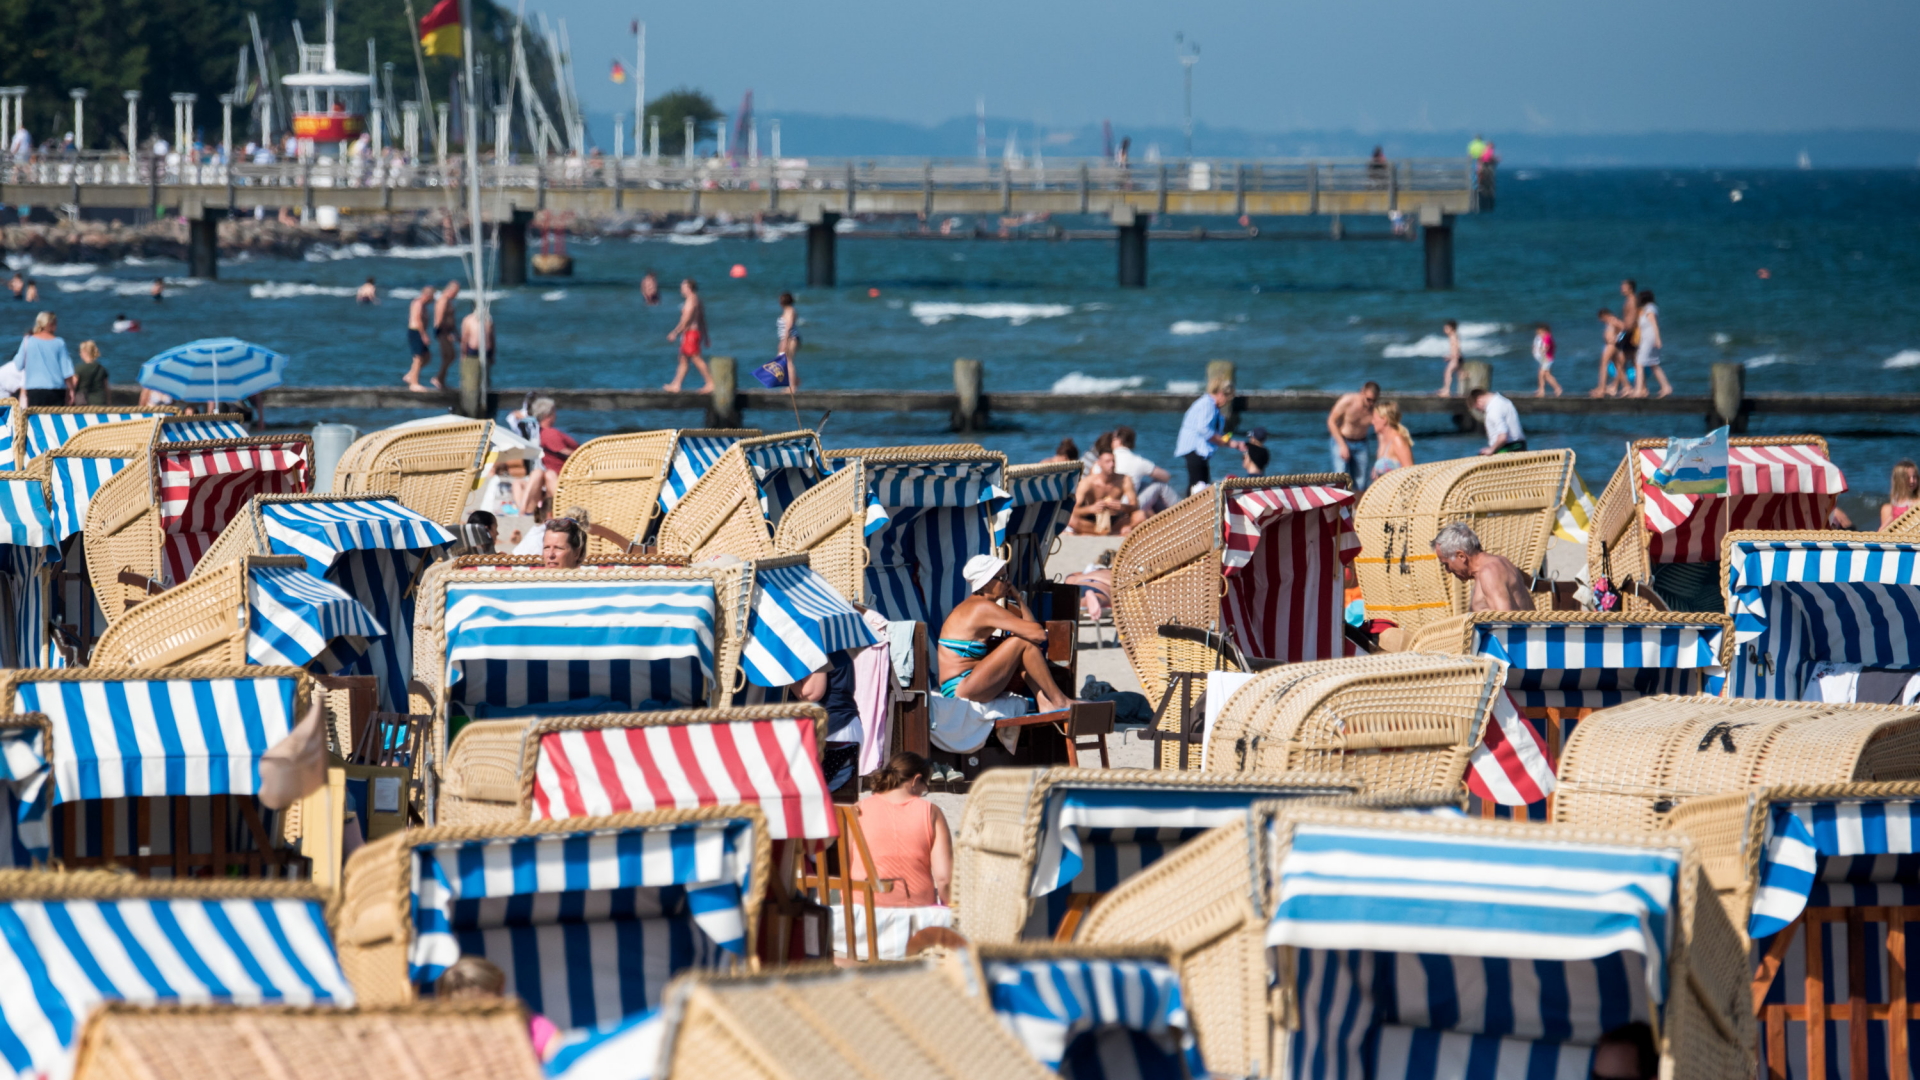 Menschen genießen in Strandkörben am Ostseestrand in Travemünde die Sonne. (Archivbild vom 25.06.2019) | dpa